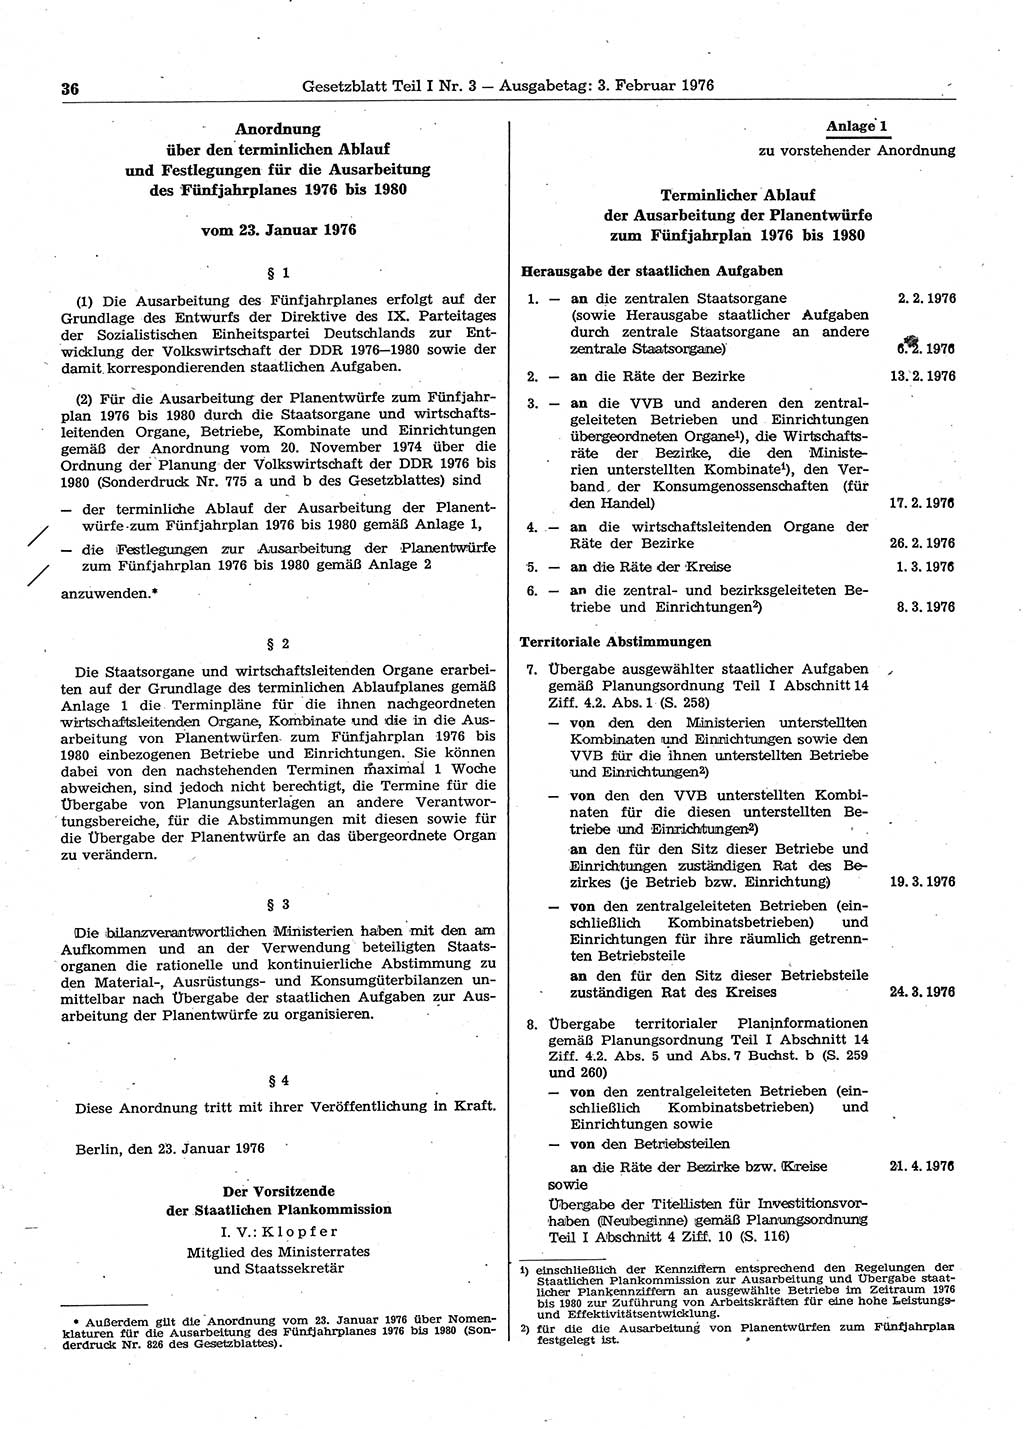 Gesetzblatt (GBl.) der Deutschen Demokratischen Republik (DDR) Teil Ⅰ 1976, Seite 36 (GBl. DDR Ⅰ 1976, S. 36)